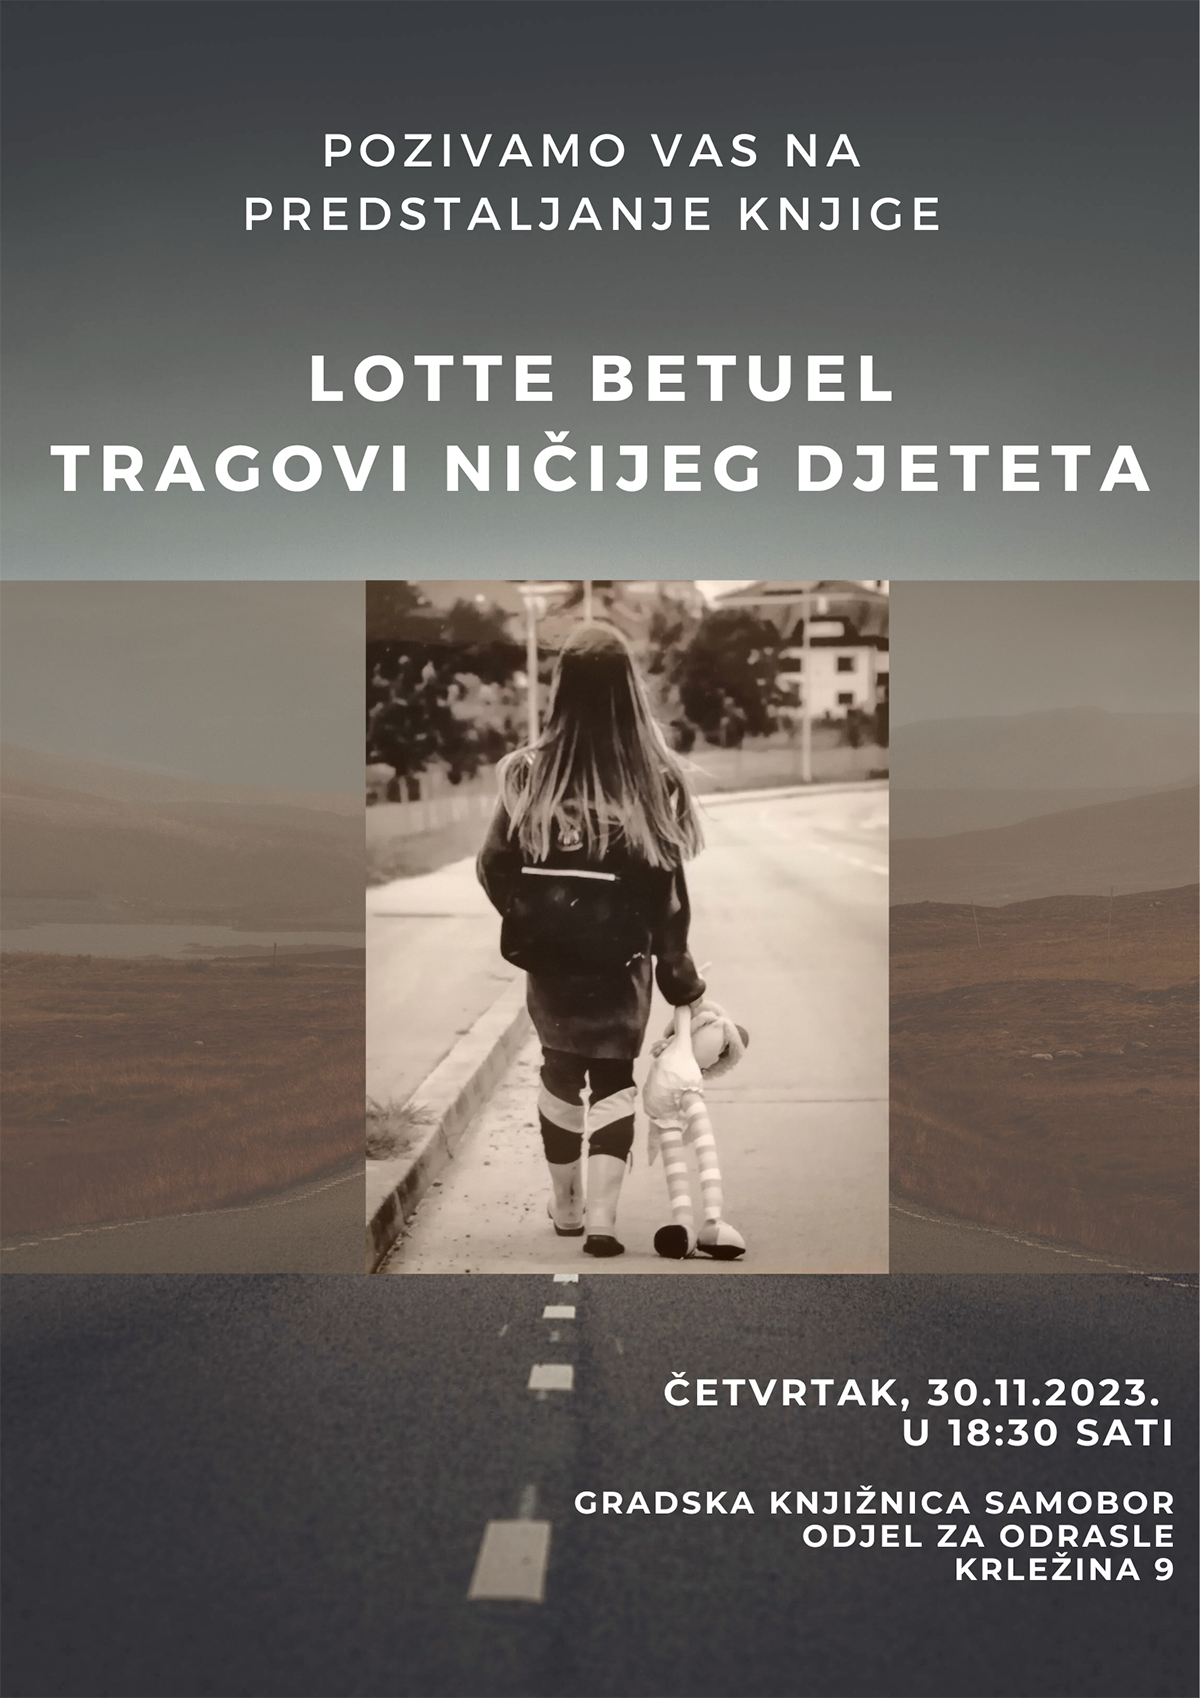 Najava predstavljanja knjige Lotte Betuel u samoborskoj knjižnici